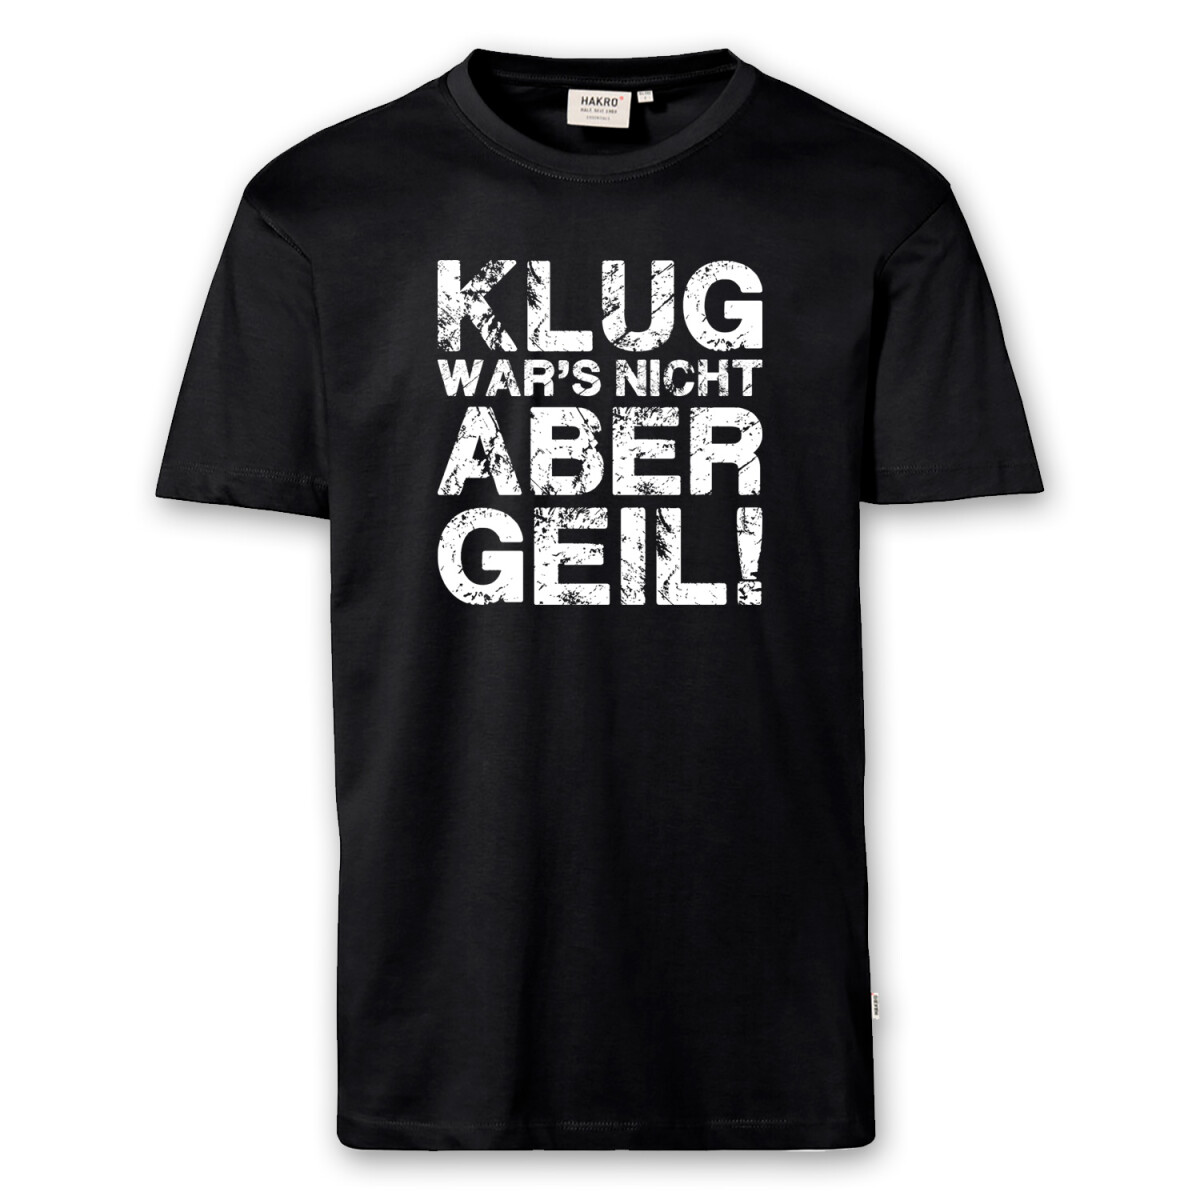 T-Shirt Männer | Fun Shirt Klug wars nicht aber geil...